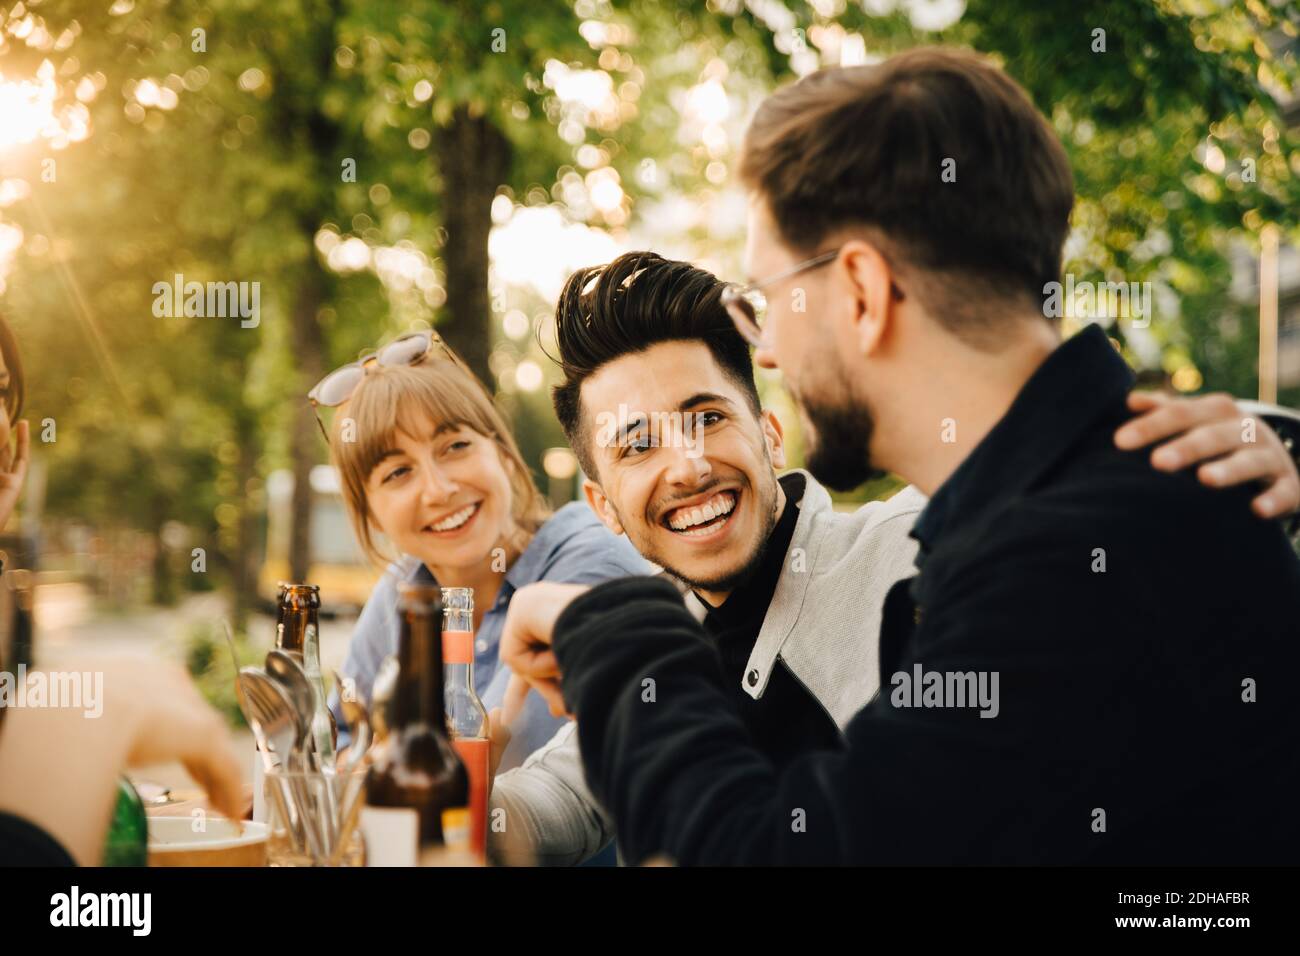 Feliz joven sentado por un hombre y una amiga en reunión social Foto de stock